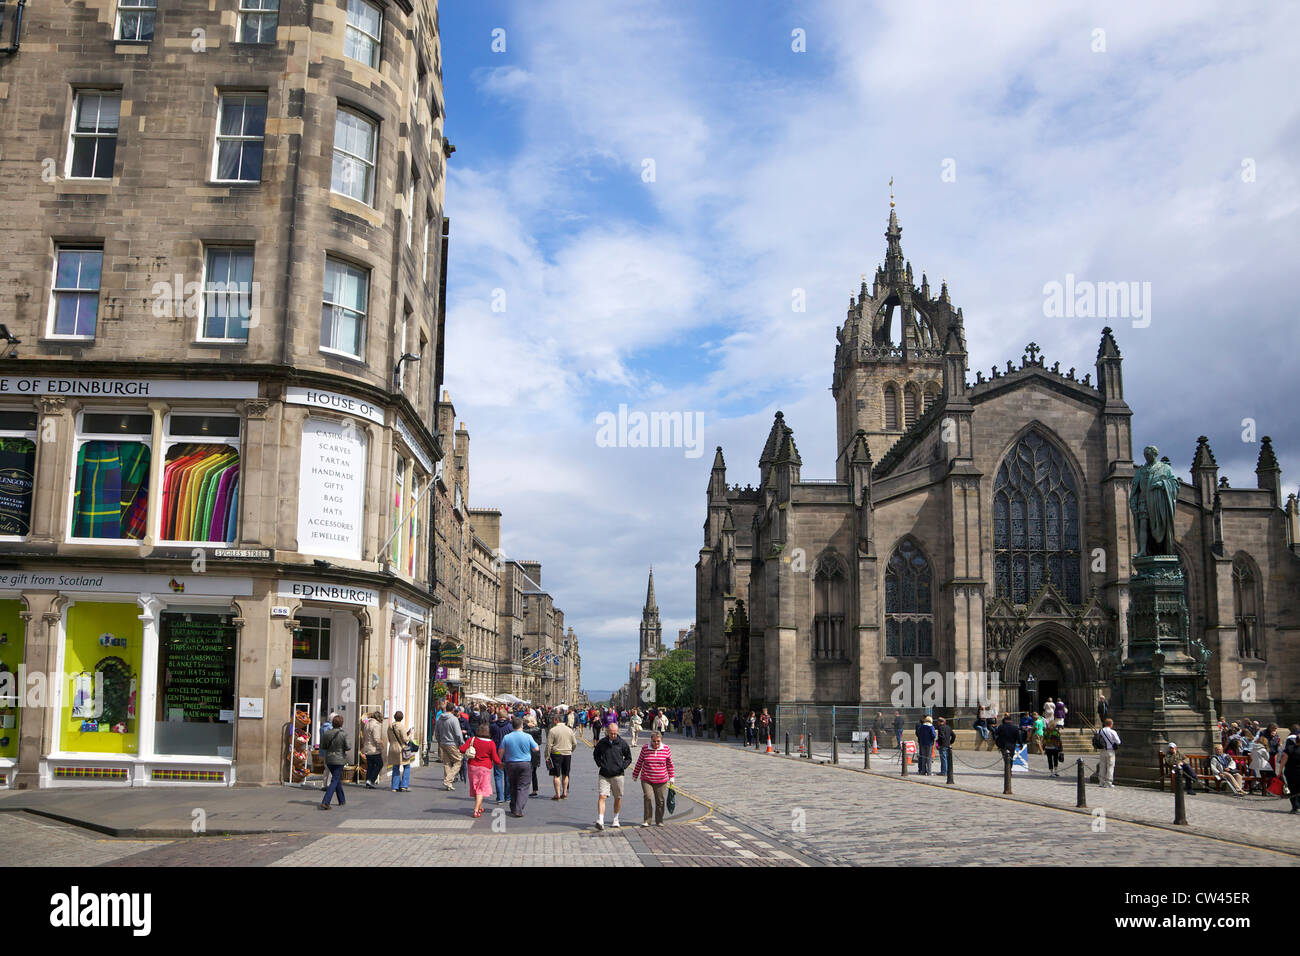 La cathédrale St Giles et le Royal Mile, vieille ville, Edinburgh, Scotland, UK, FR, British Isles, Europe Banque D'Images